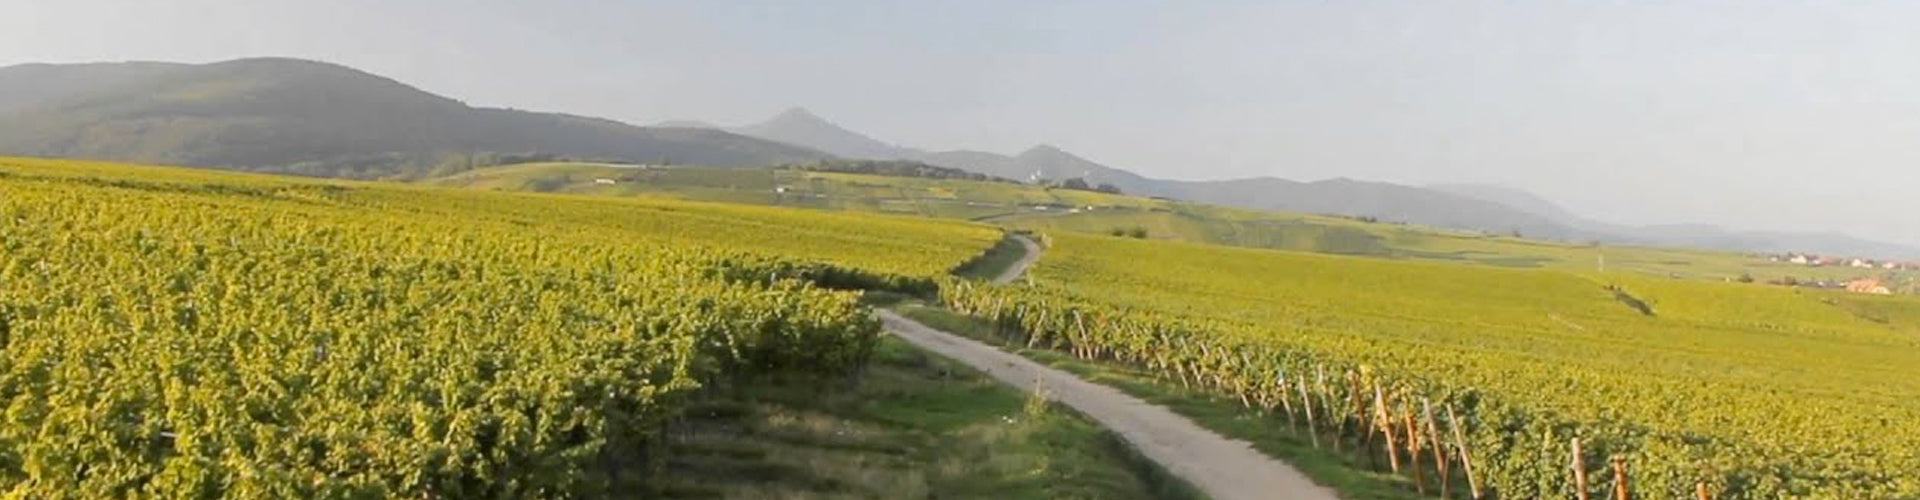 Vineyards in Riquewihr, Alsace